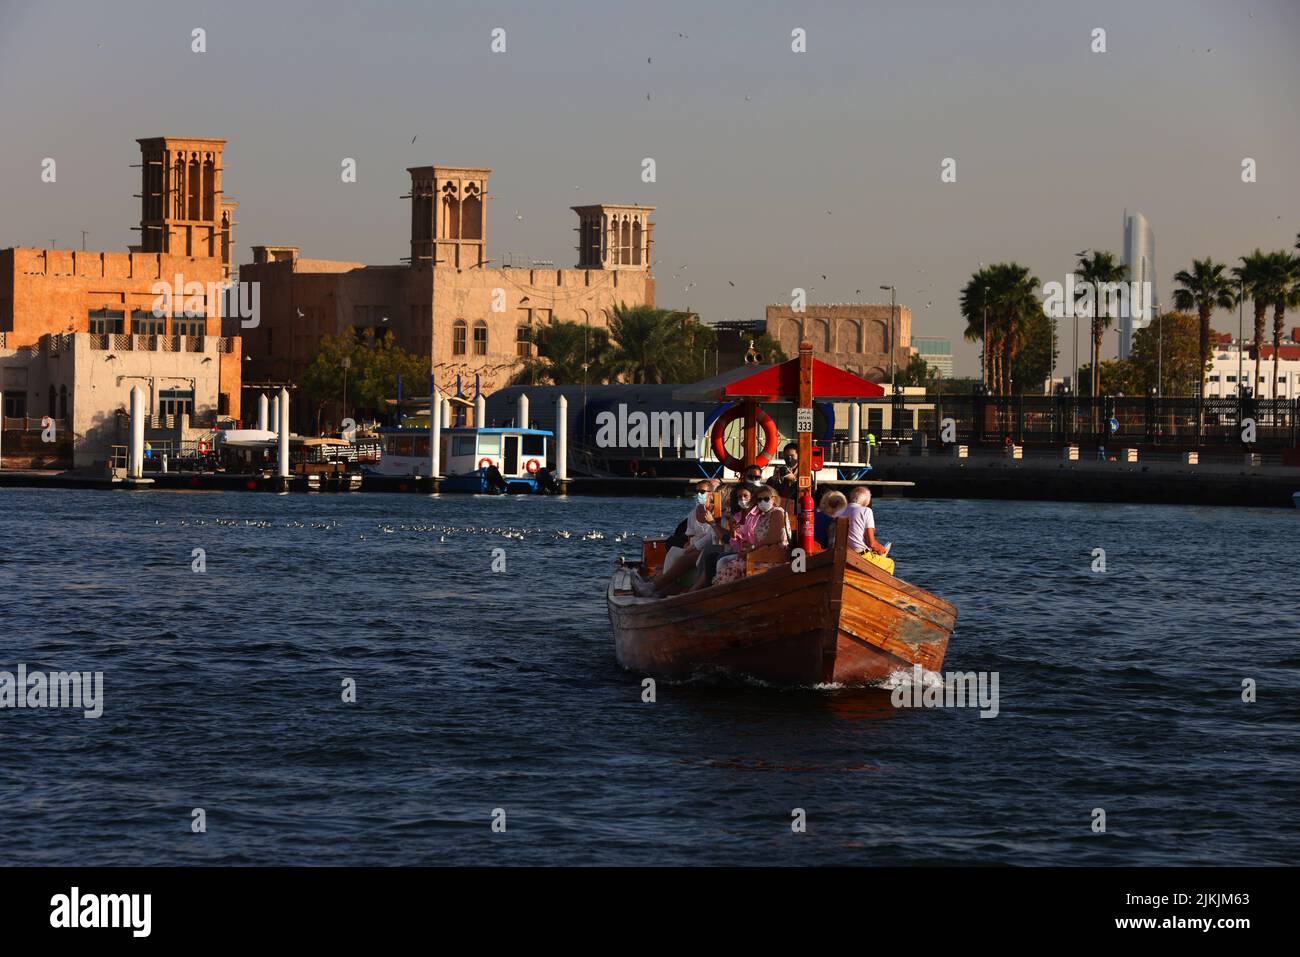 Holzboot, Dubia, Boot, Dubai Creek, Dubai Kanal, Wassertaxi oder Fähren bringen auf dem Dubai Creek Passagiere an das andere ufer! Foto de stock